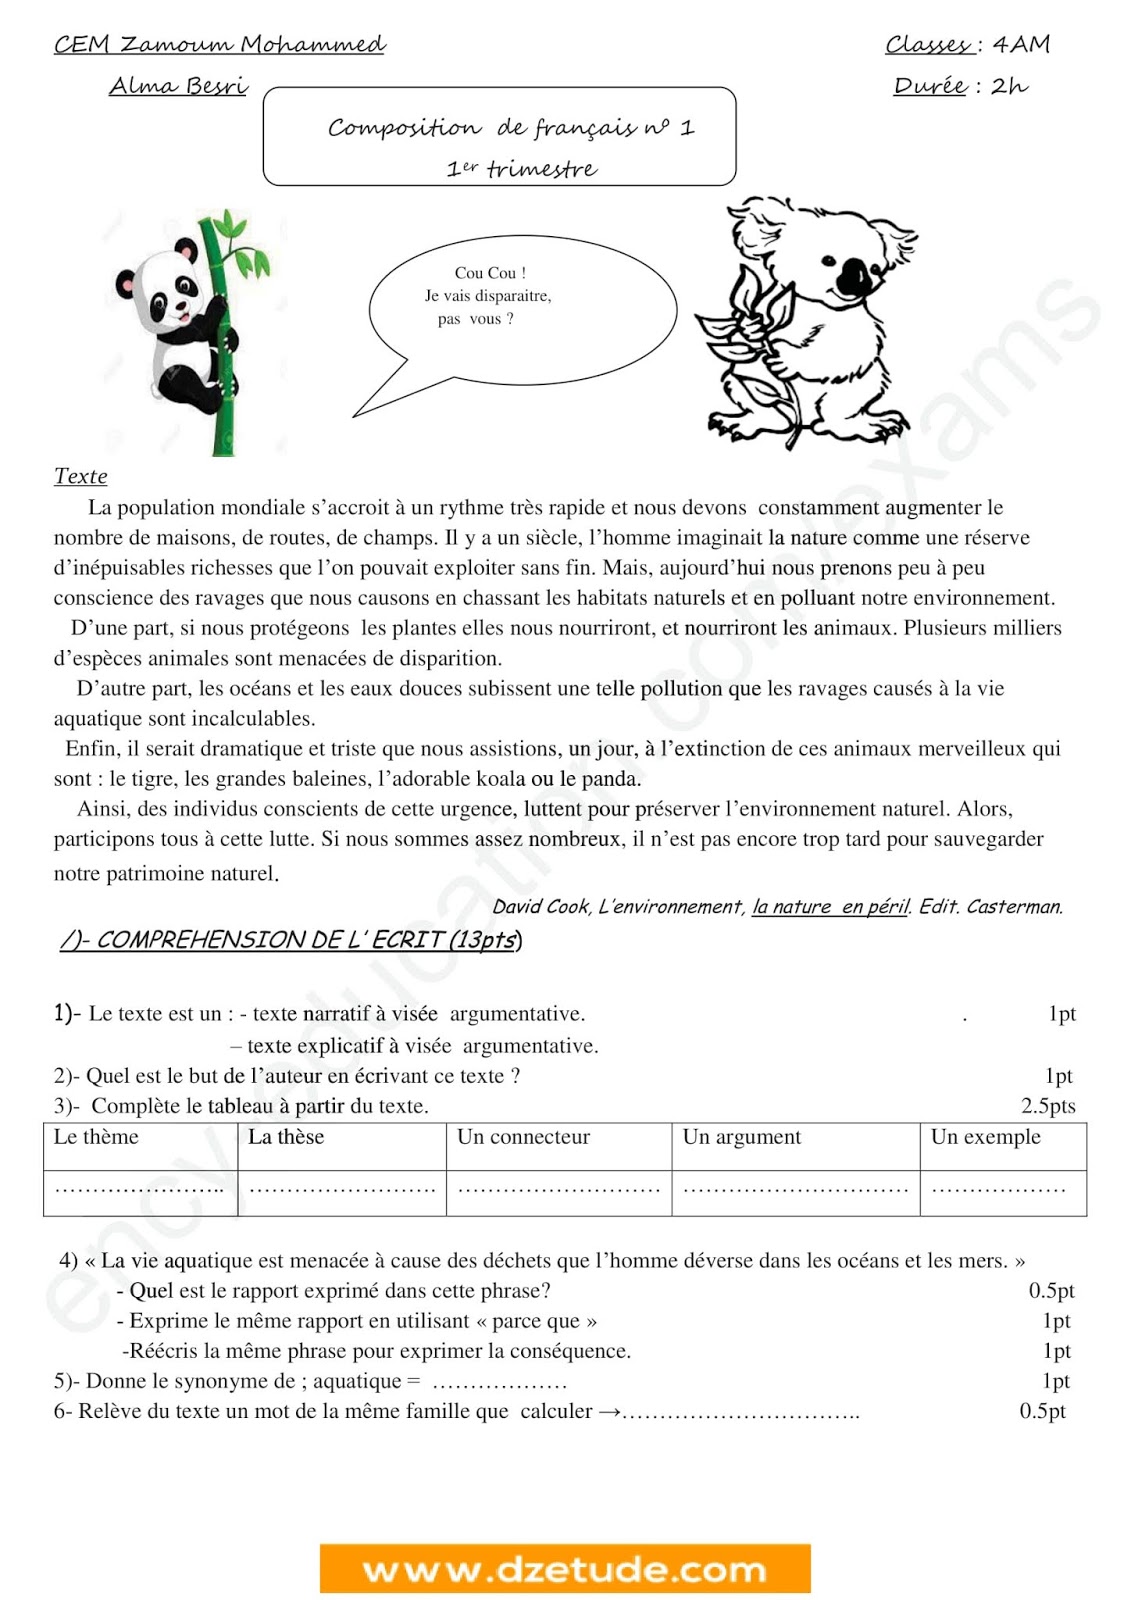 إختبار الفصل الأول في اللغة الفرنسية للسنة الرابعة متوسط - الجيل الثاني نموذج 2